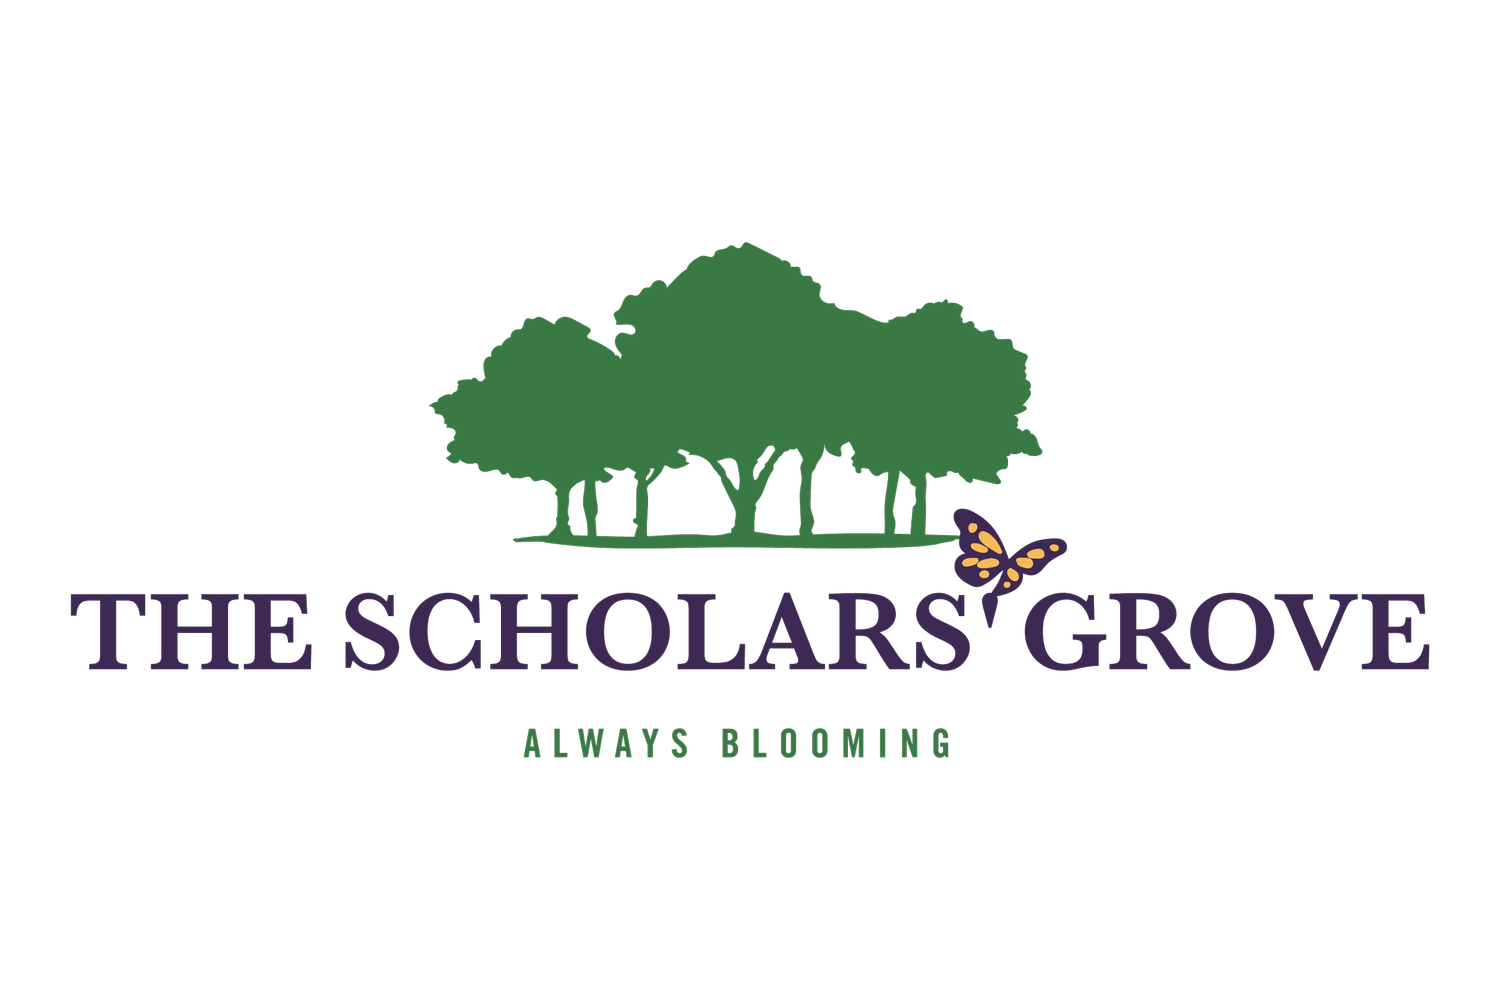 The Scholars' Grove